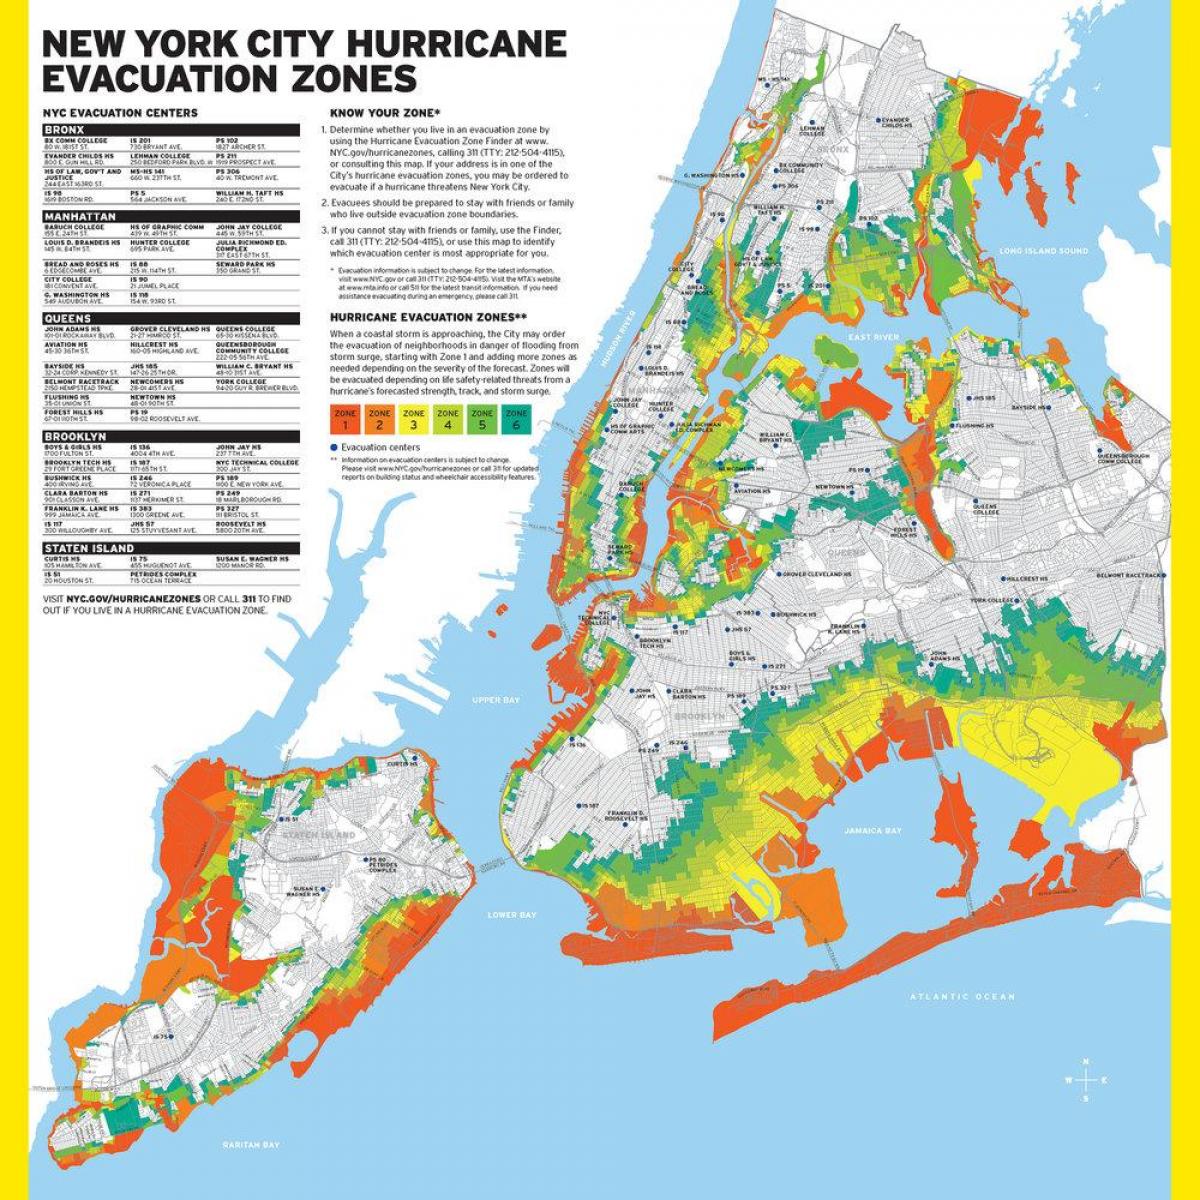 Manhattan plūdu zonā, kas kartē